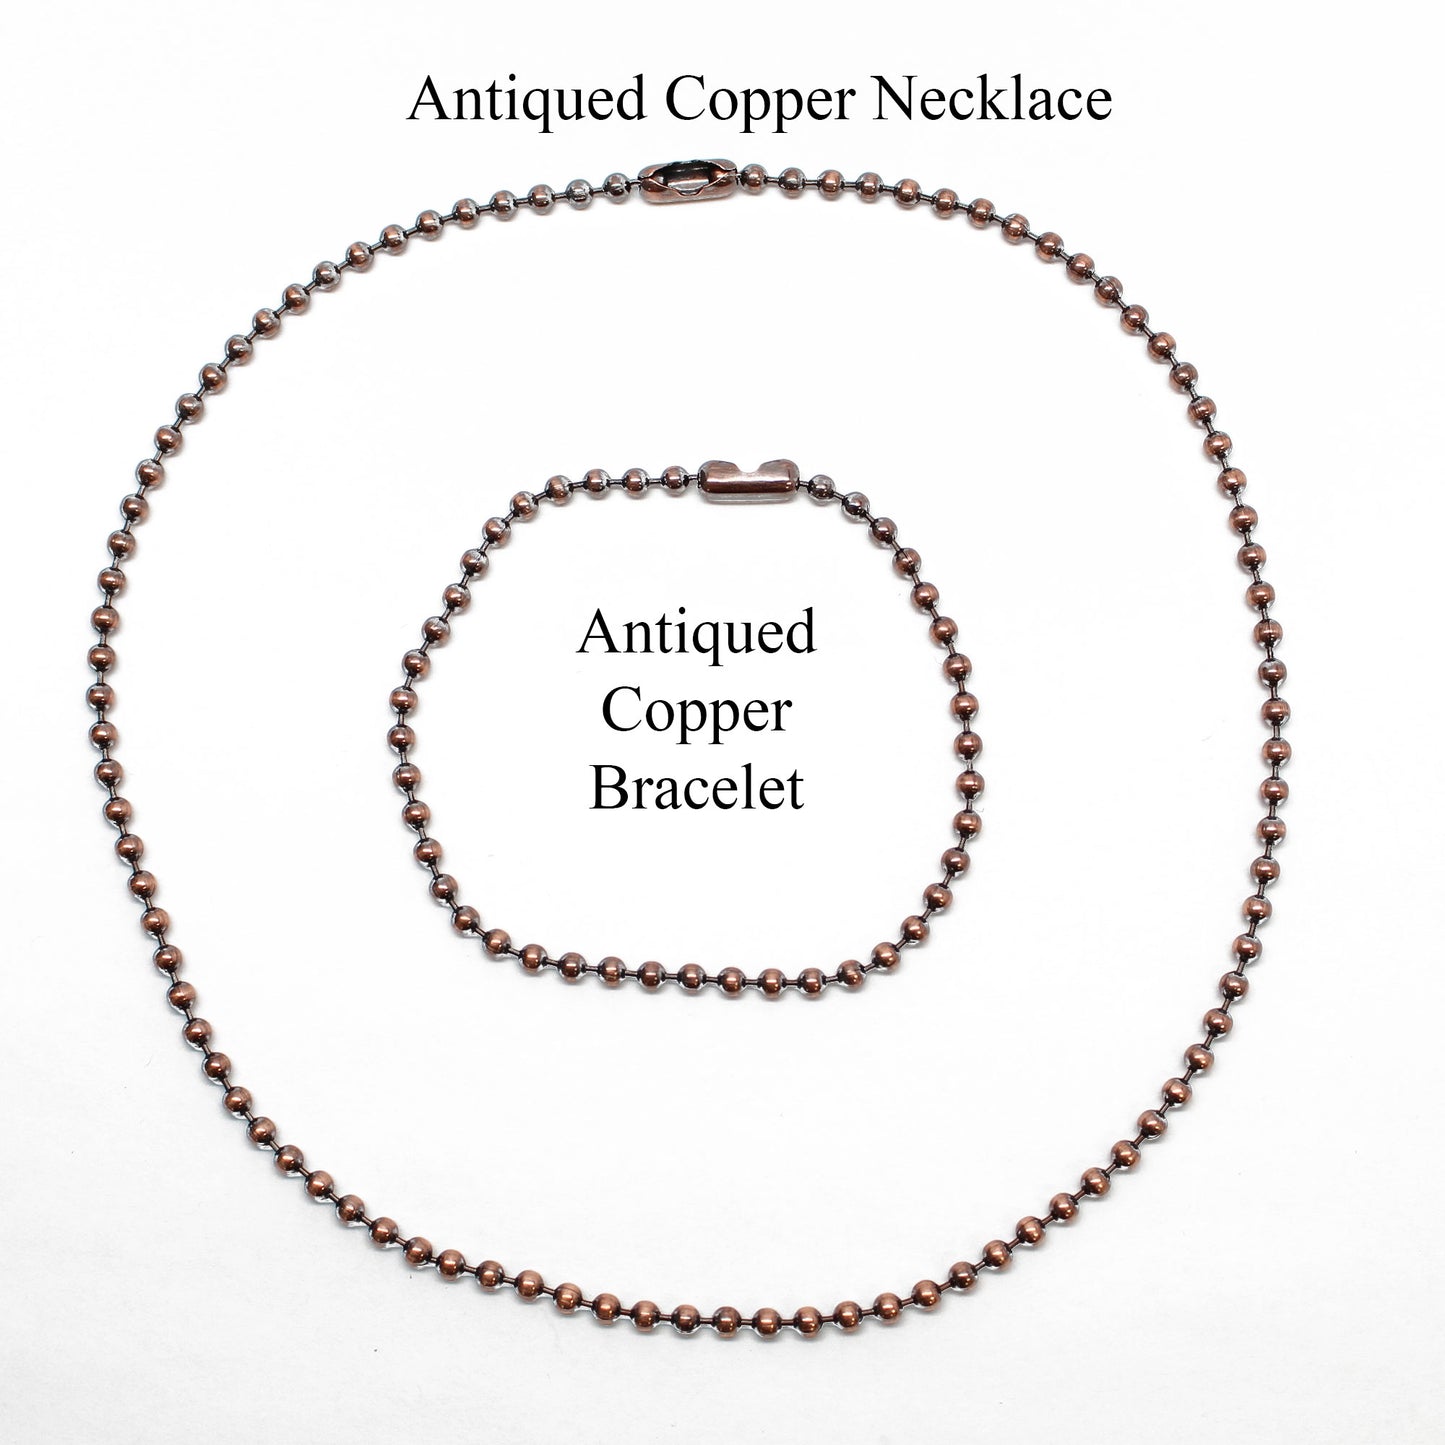 Antique Copper Chain Copper Chain Solid Copper Chain Copper Necklace Raw Copper  Chain Copper Jewellery solid Copper Necklace 